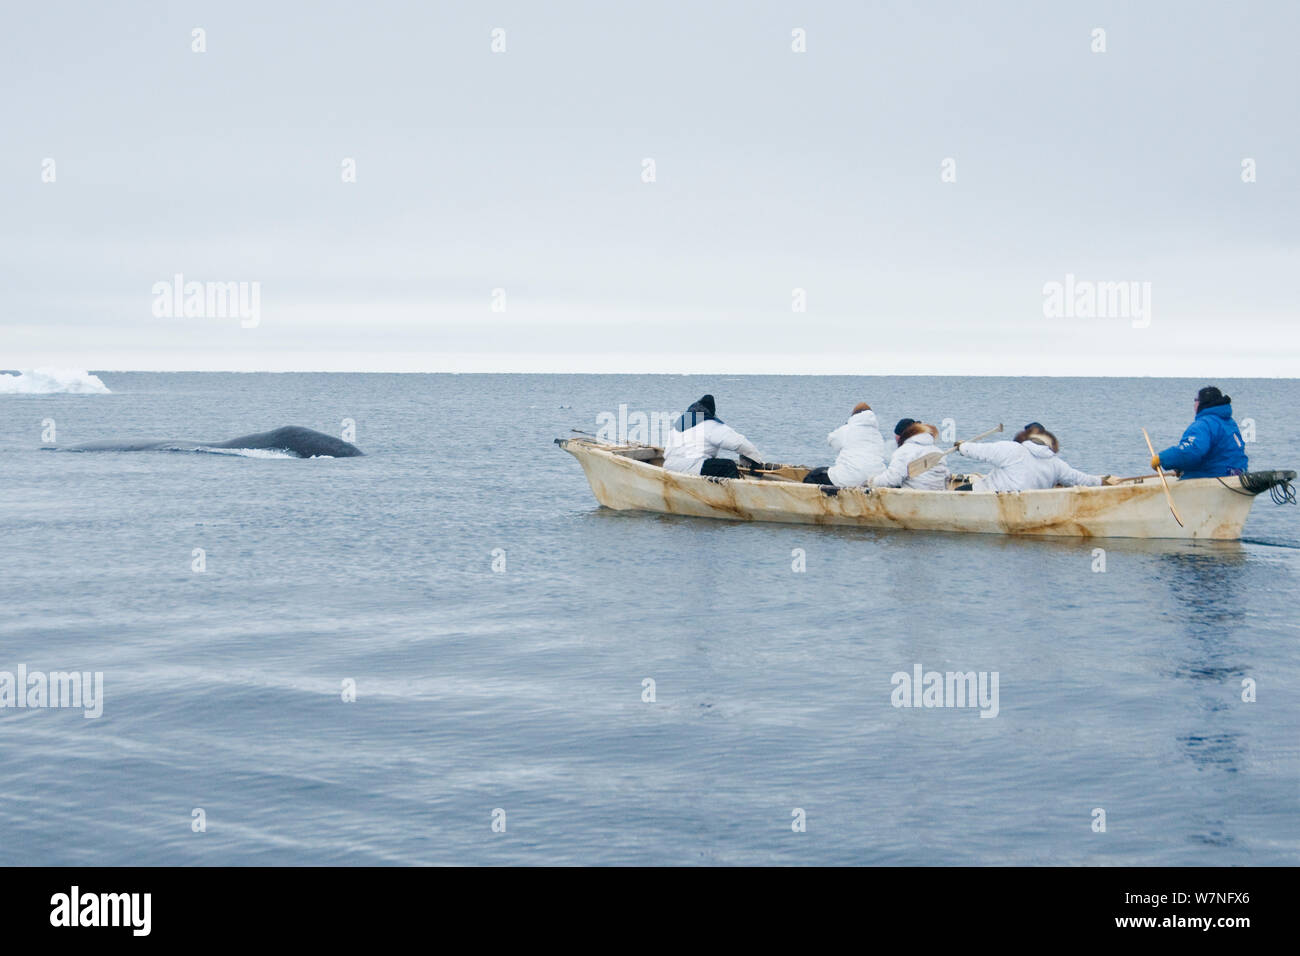 Les baleiniers de subsistance Inupiaq essayez d'attraper une baleine boréale (Balaena mysticetus) de leur d'umiak dans une coupure dans la banquise. Mer de Tchoukotka, au large de Barrow, côte de l'Arctique de l'Alaska, avril 2012. Banque D'Images